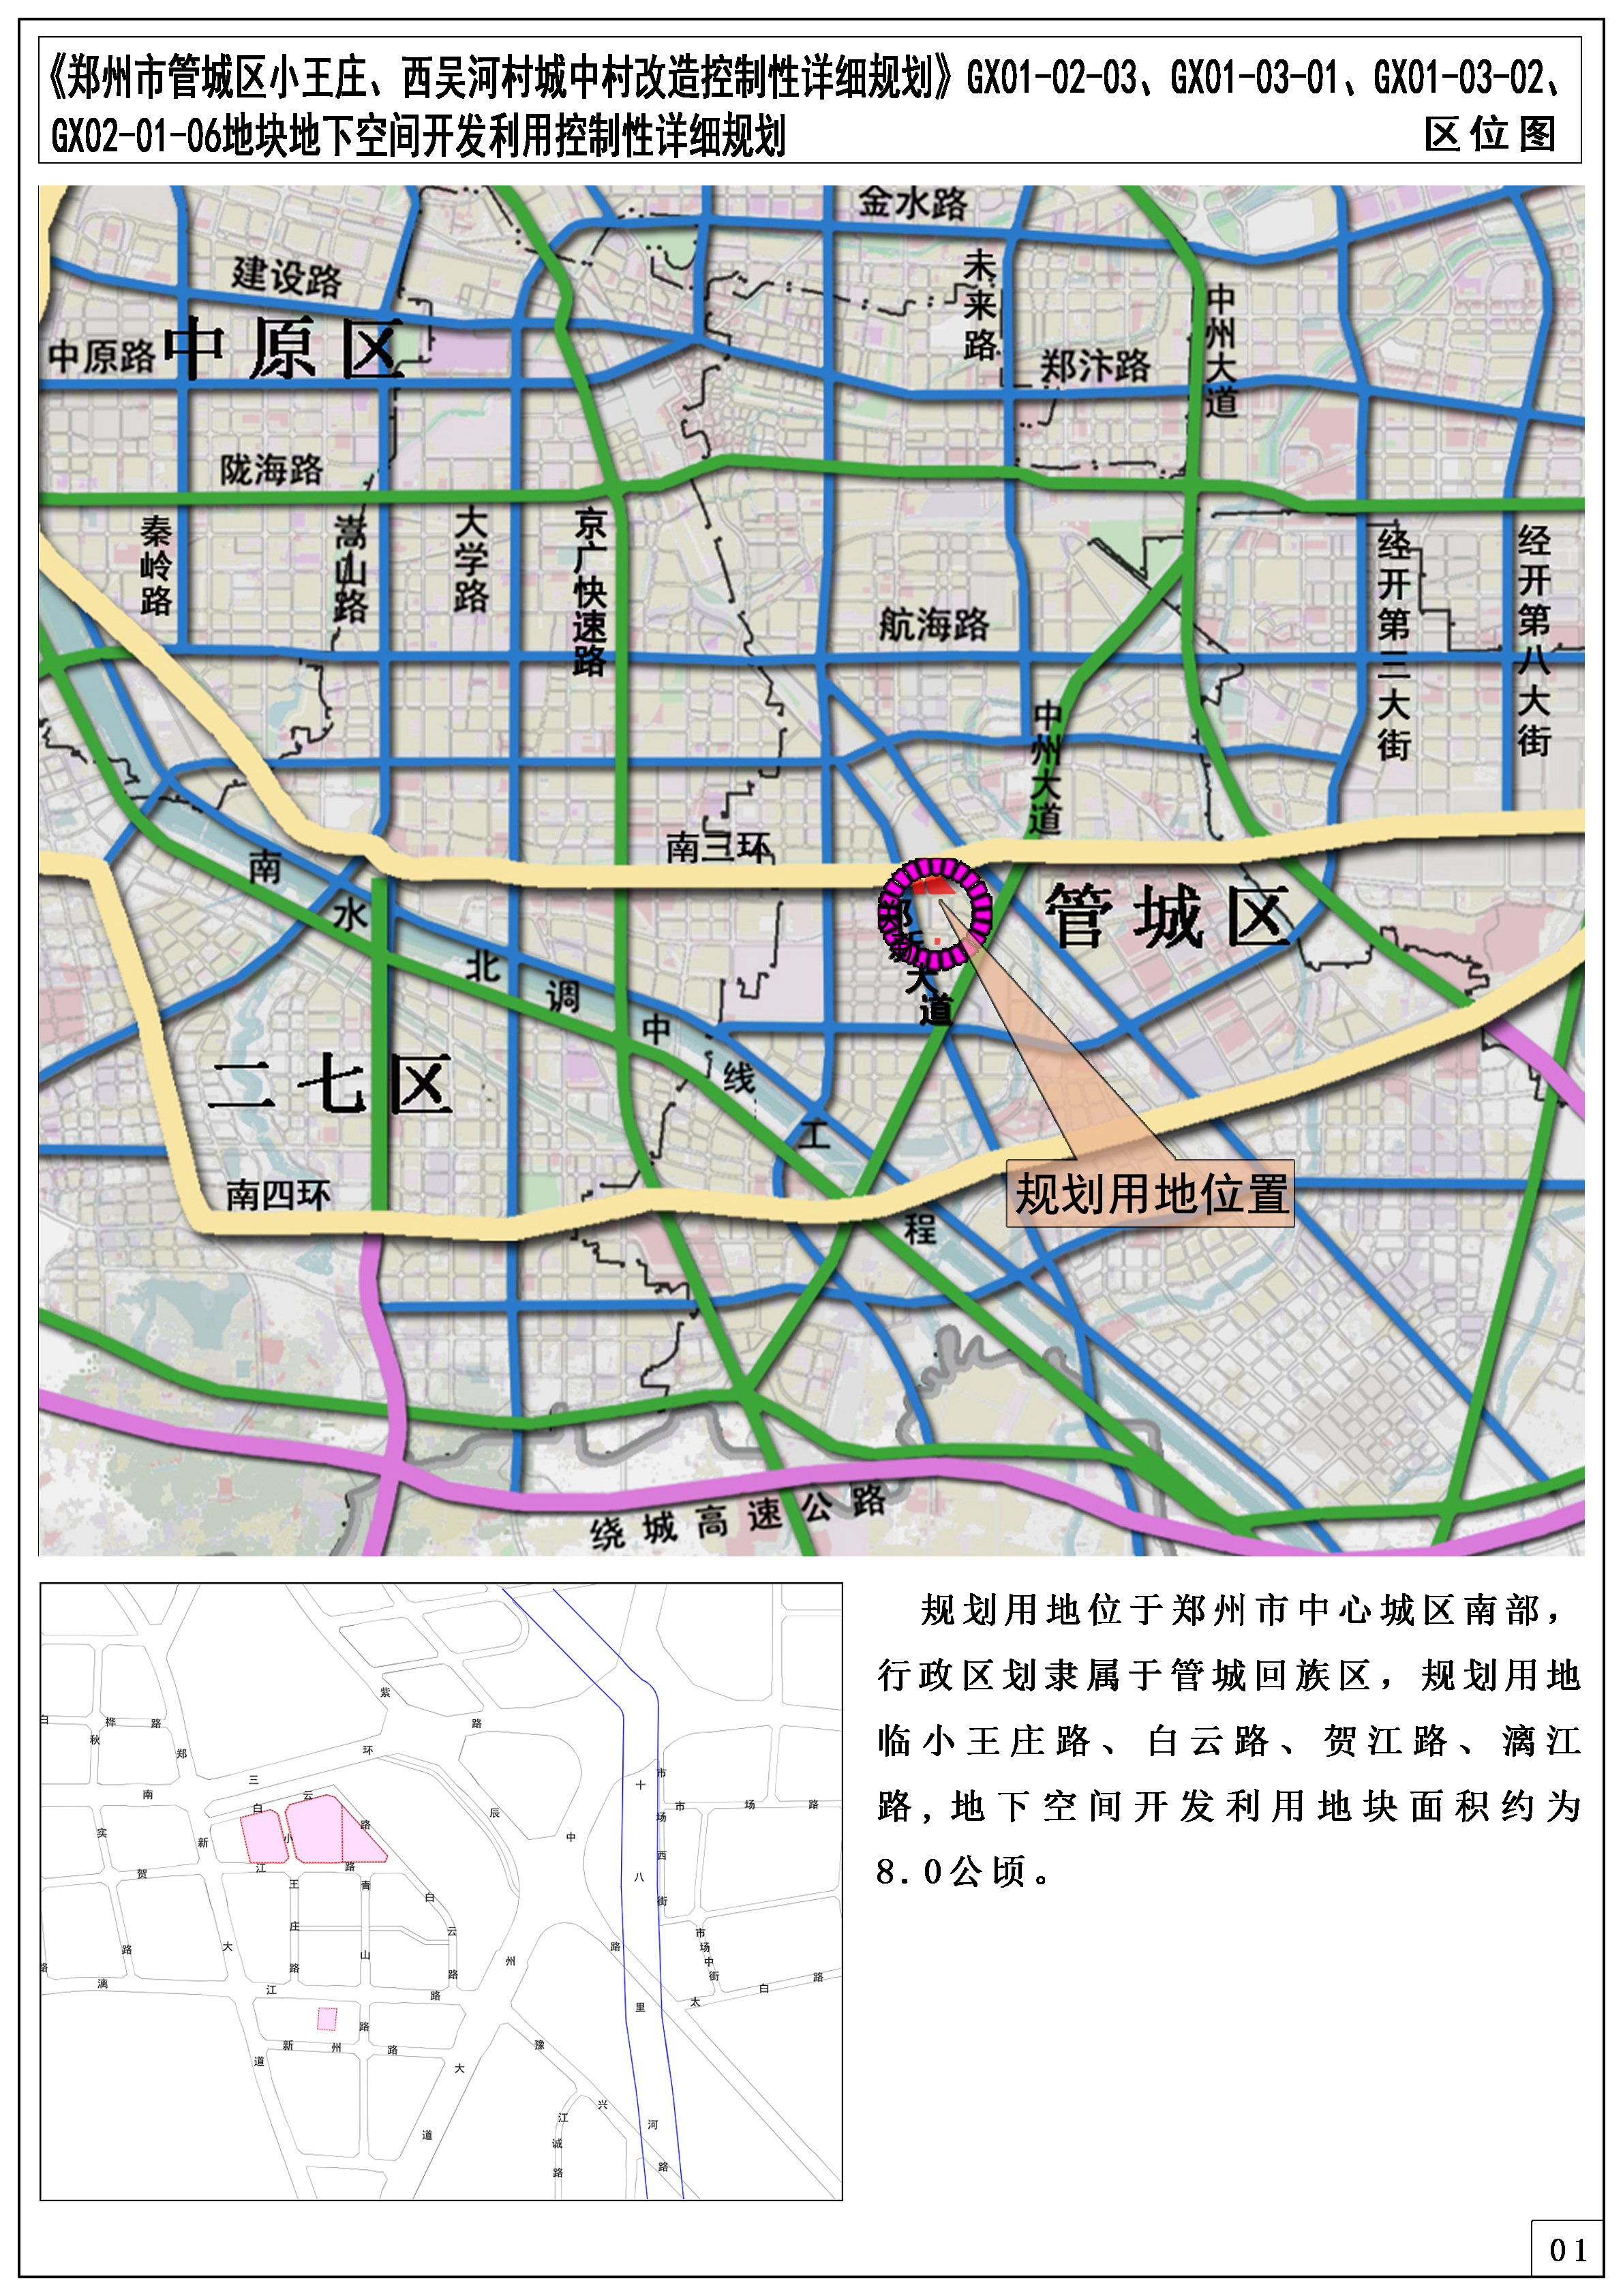 《郑州市管城区小王庄、西吴河村城中村改造控制性详细规划》GX01-02-03、GX01-03-01、GX01-03-02、GX02-01-06地块地下空间开发利用控制性详细规划